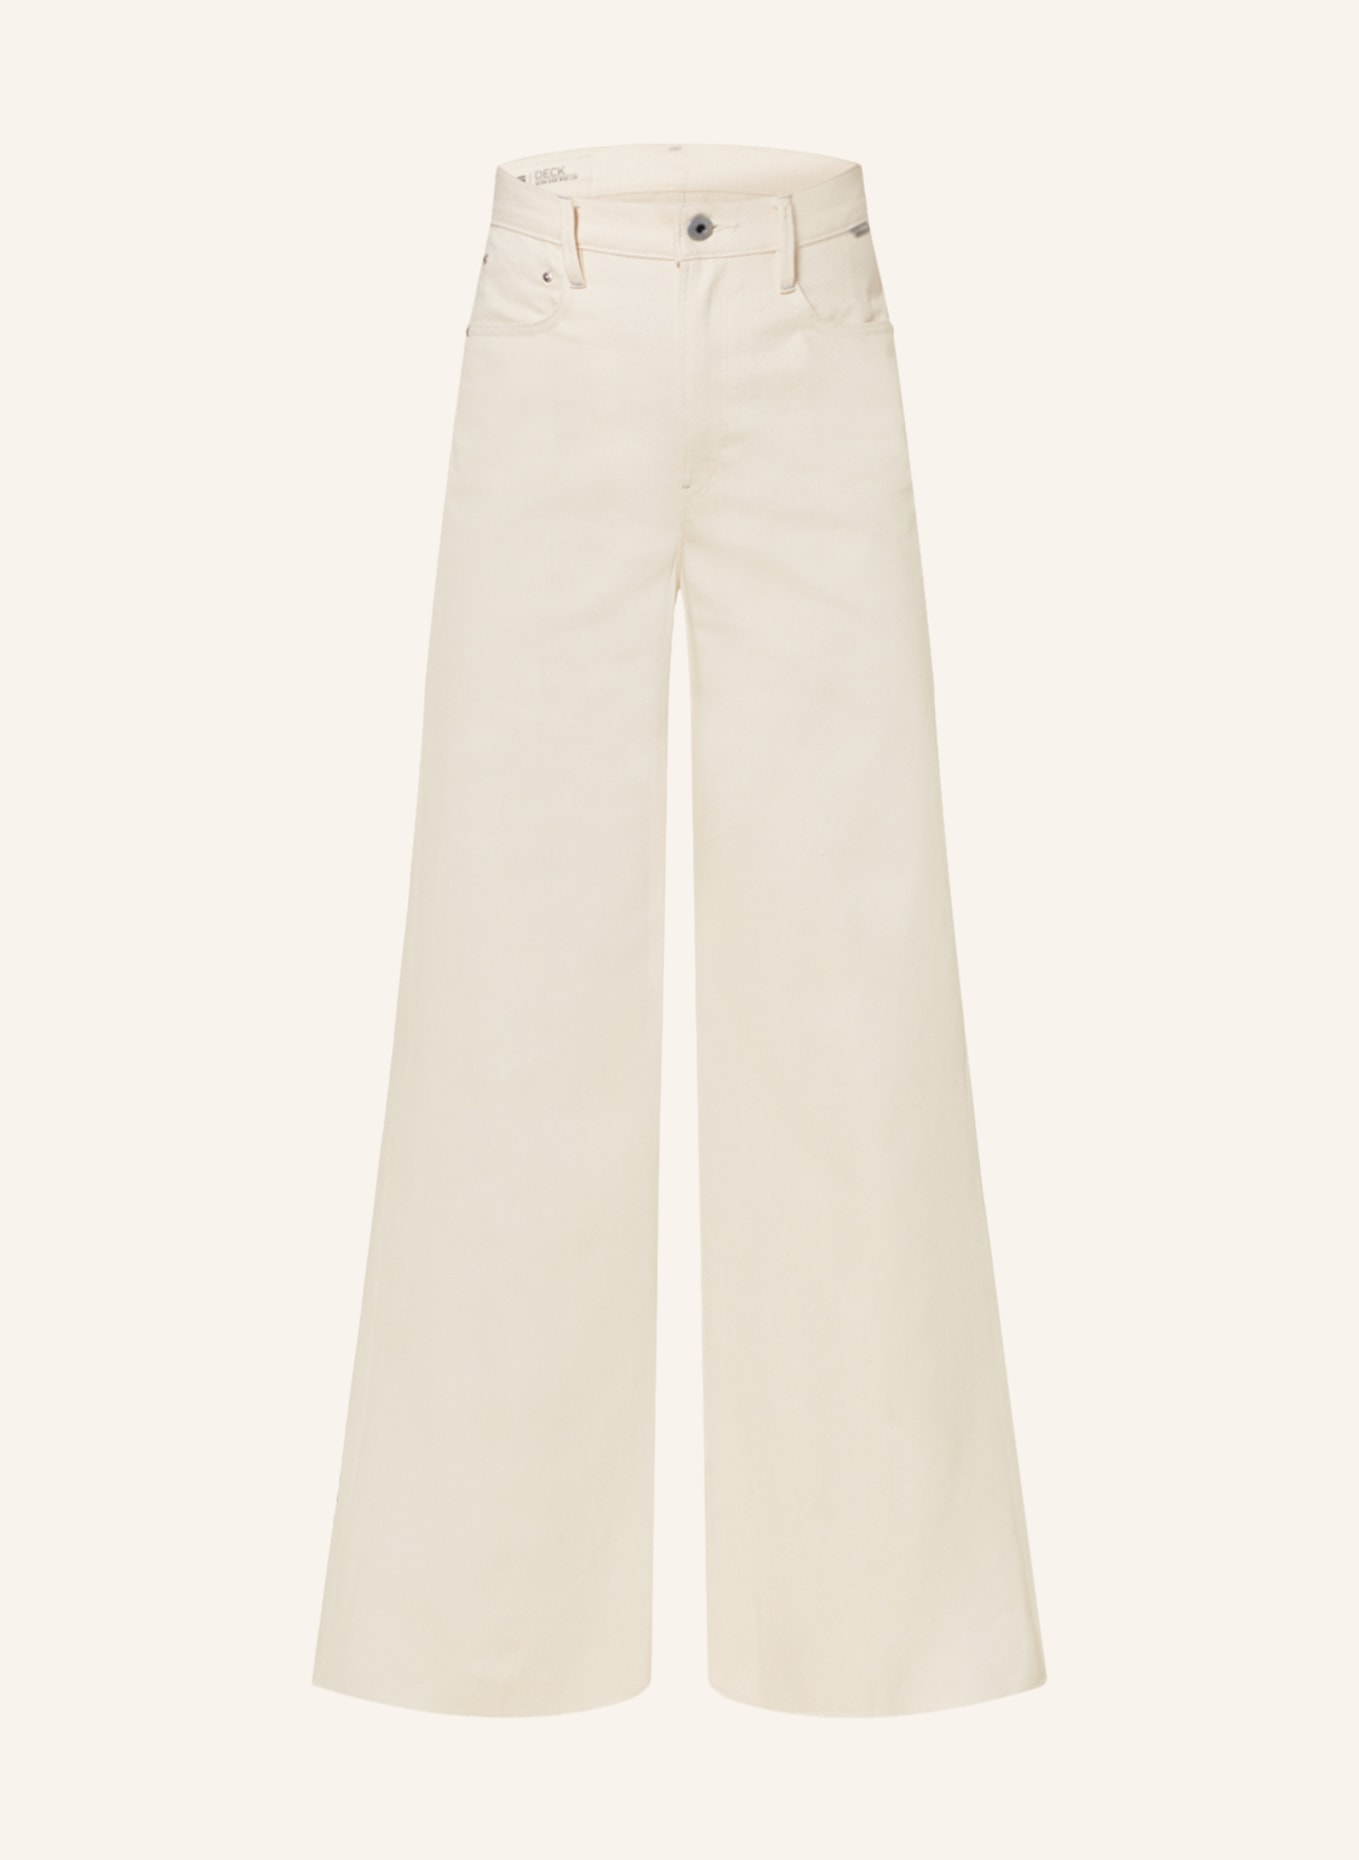 G-Star RAW Flared Jeans DECK, Farbe: 159 ecru (Bild 1)